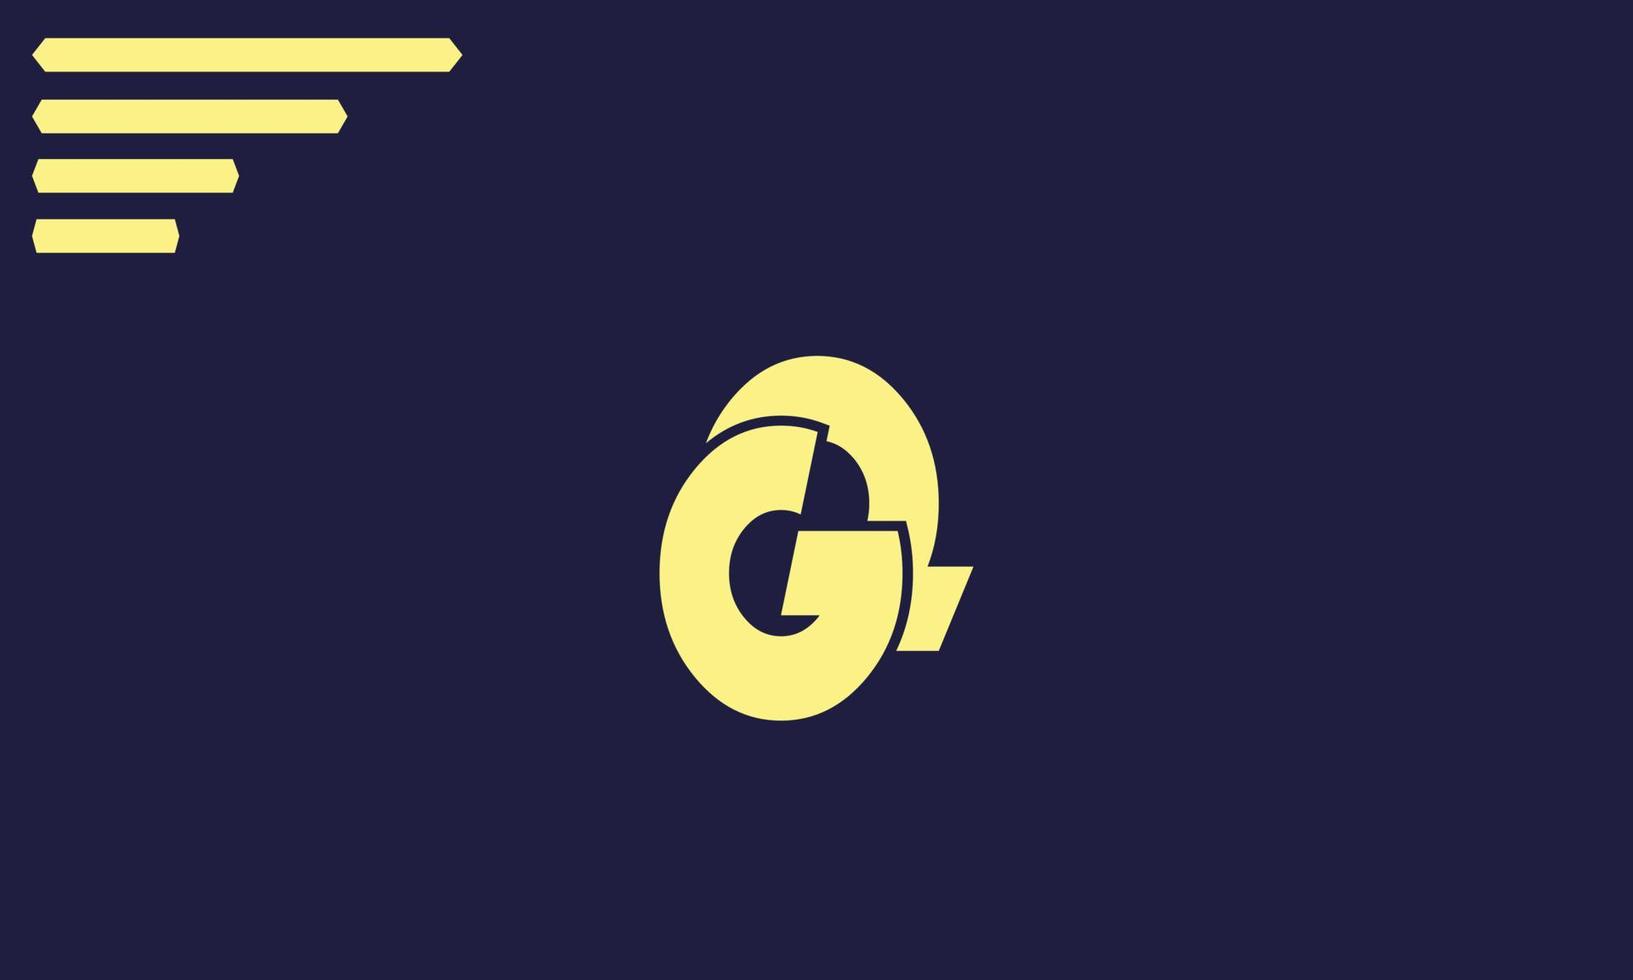 letras del alfabeto iniciales monograma logo gq, qg, g y q vector